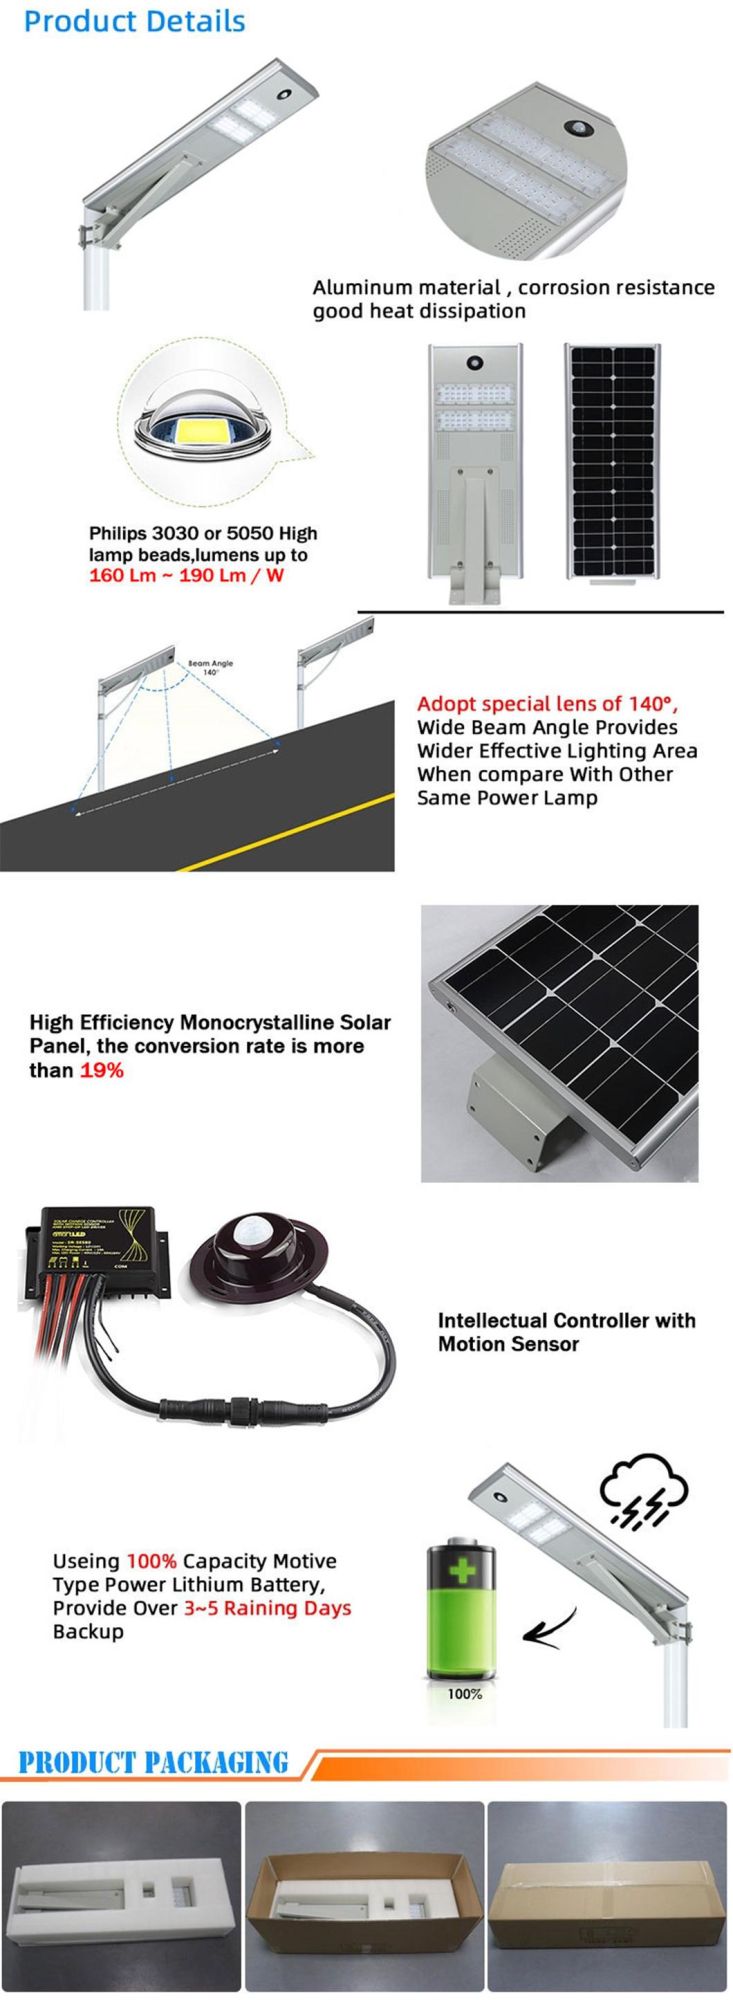 LED 30W 40W 50W 60W 80W 100W 120W Outdoor IP65 Waterproof Integrated All in One Motion Sensor Solar Street Light